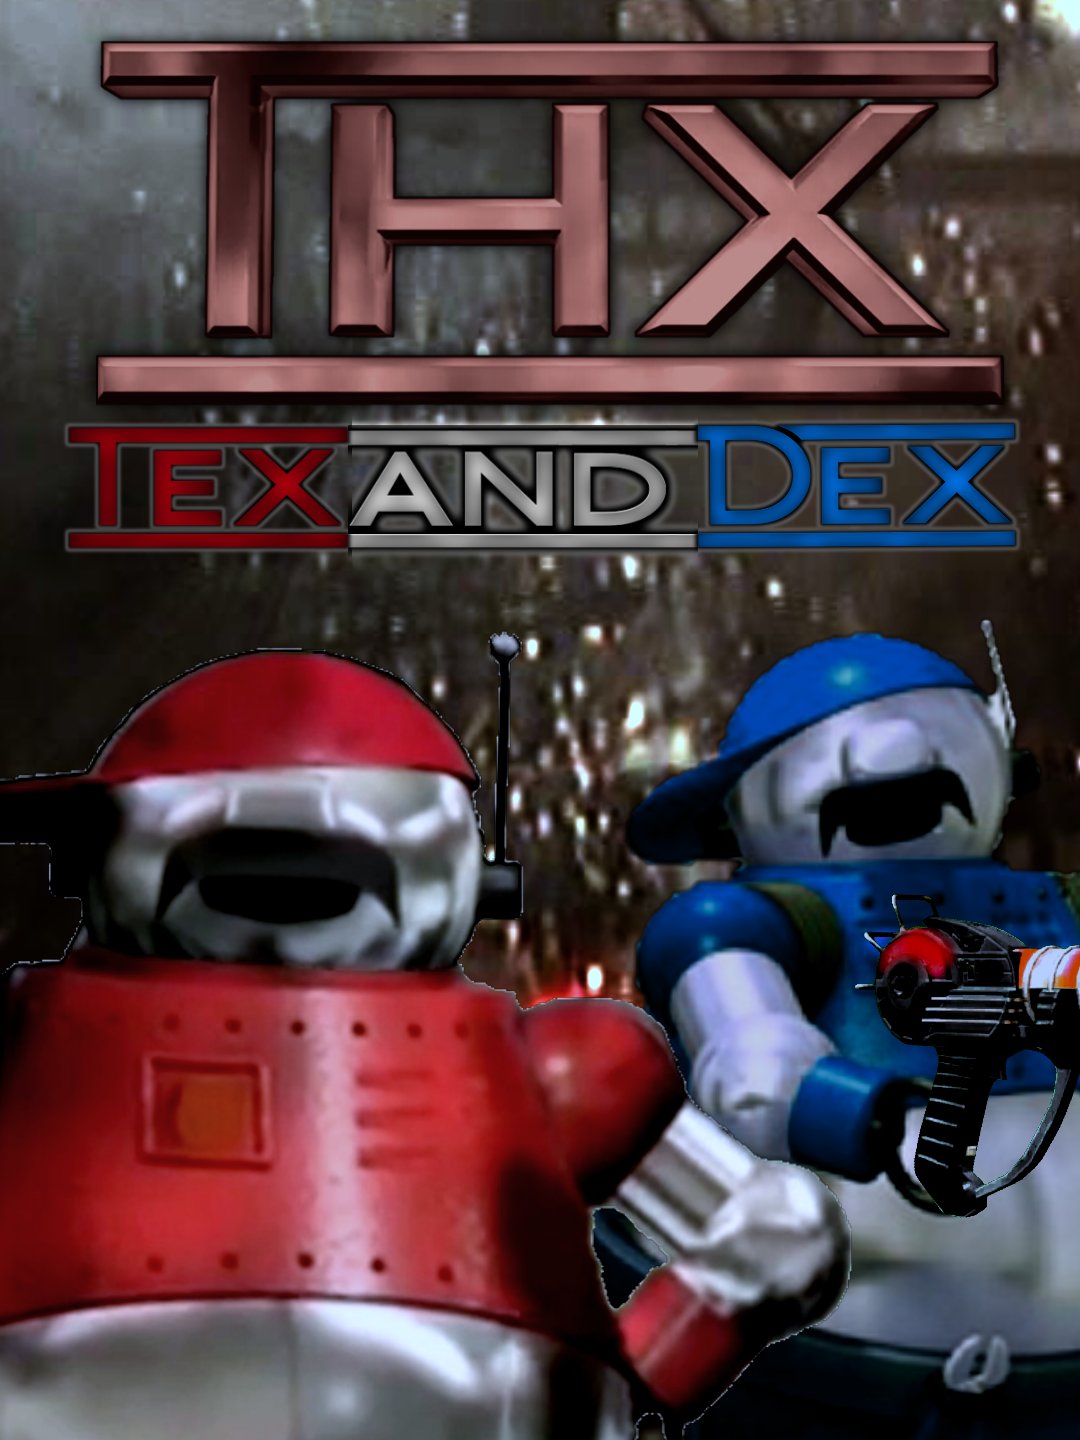 DVD Logo Bot on X:  / X